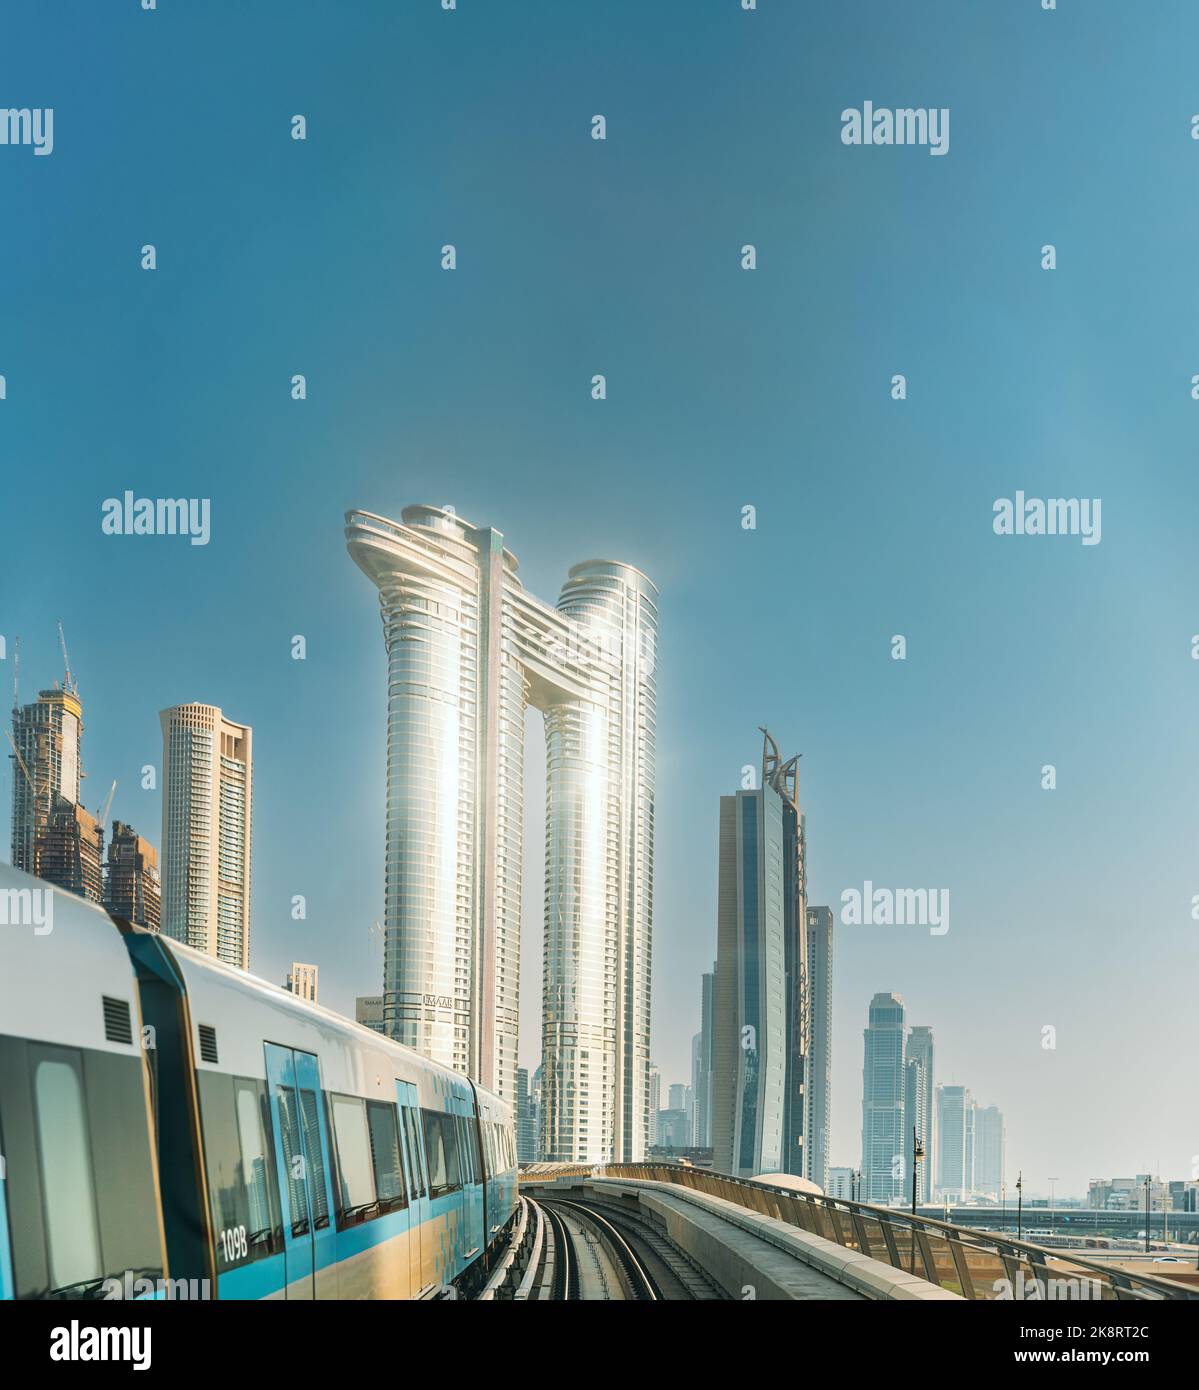 Monorail Subway fährt zwischen gläsernen Wolkenkratzern in Dubai. Verkehr auf der Straße in Dubai. Skyline mit Stadtbild. Städtischer Hintergrund Stockfoto